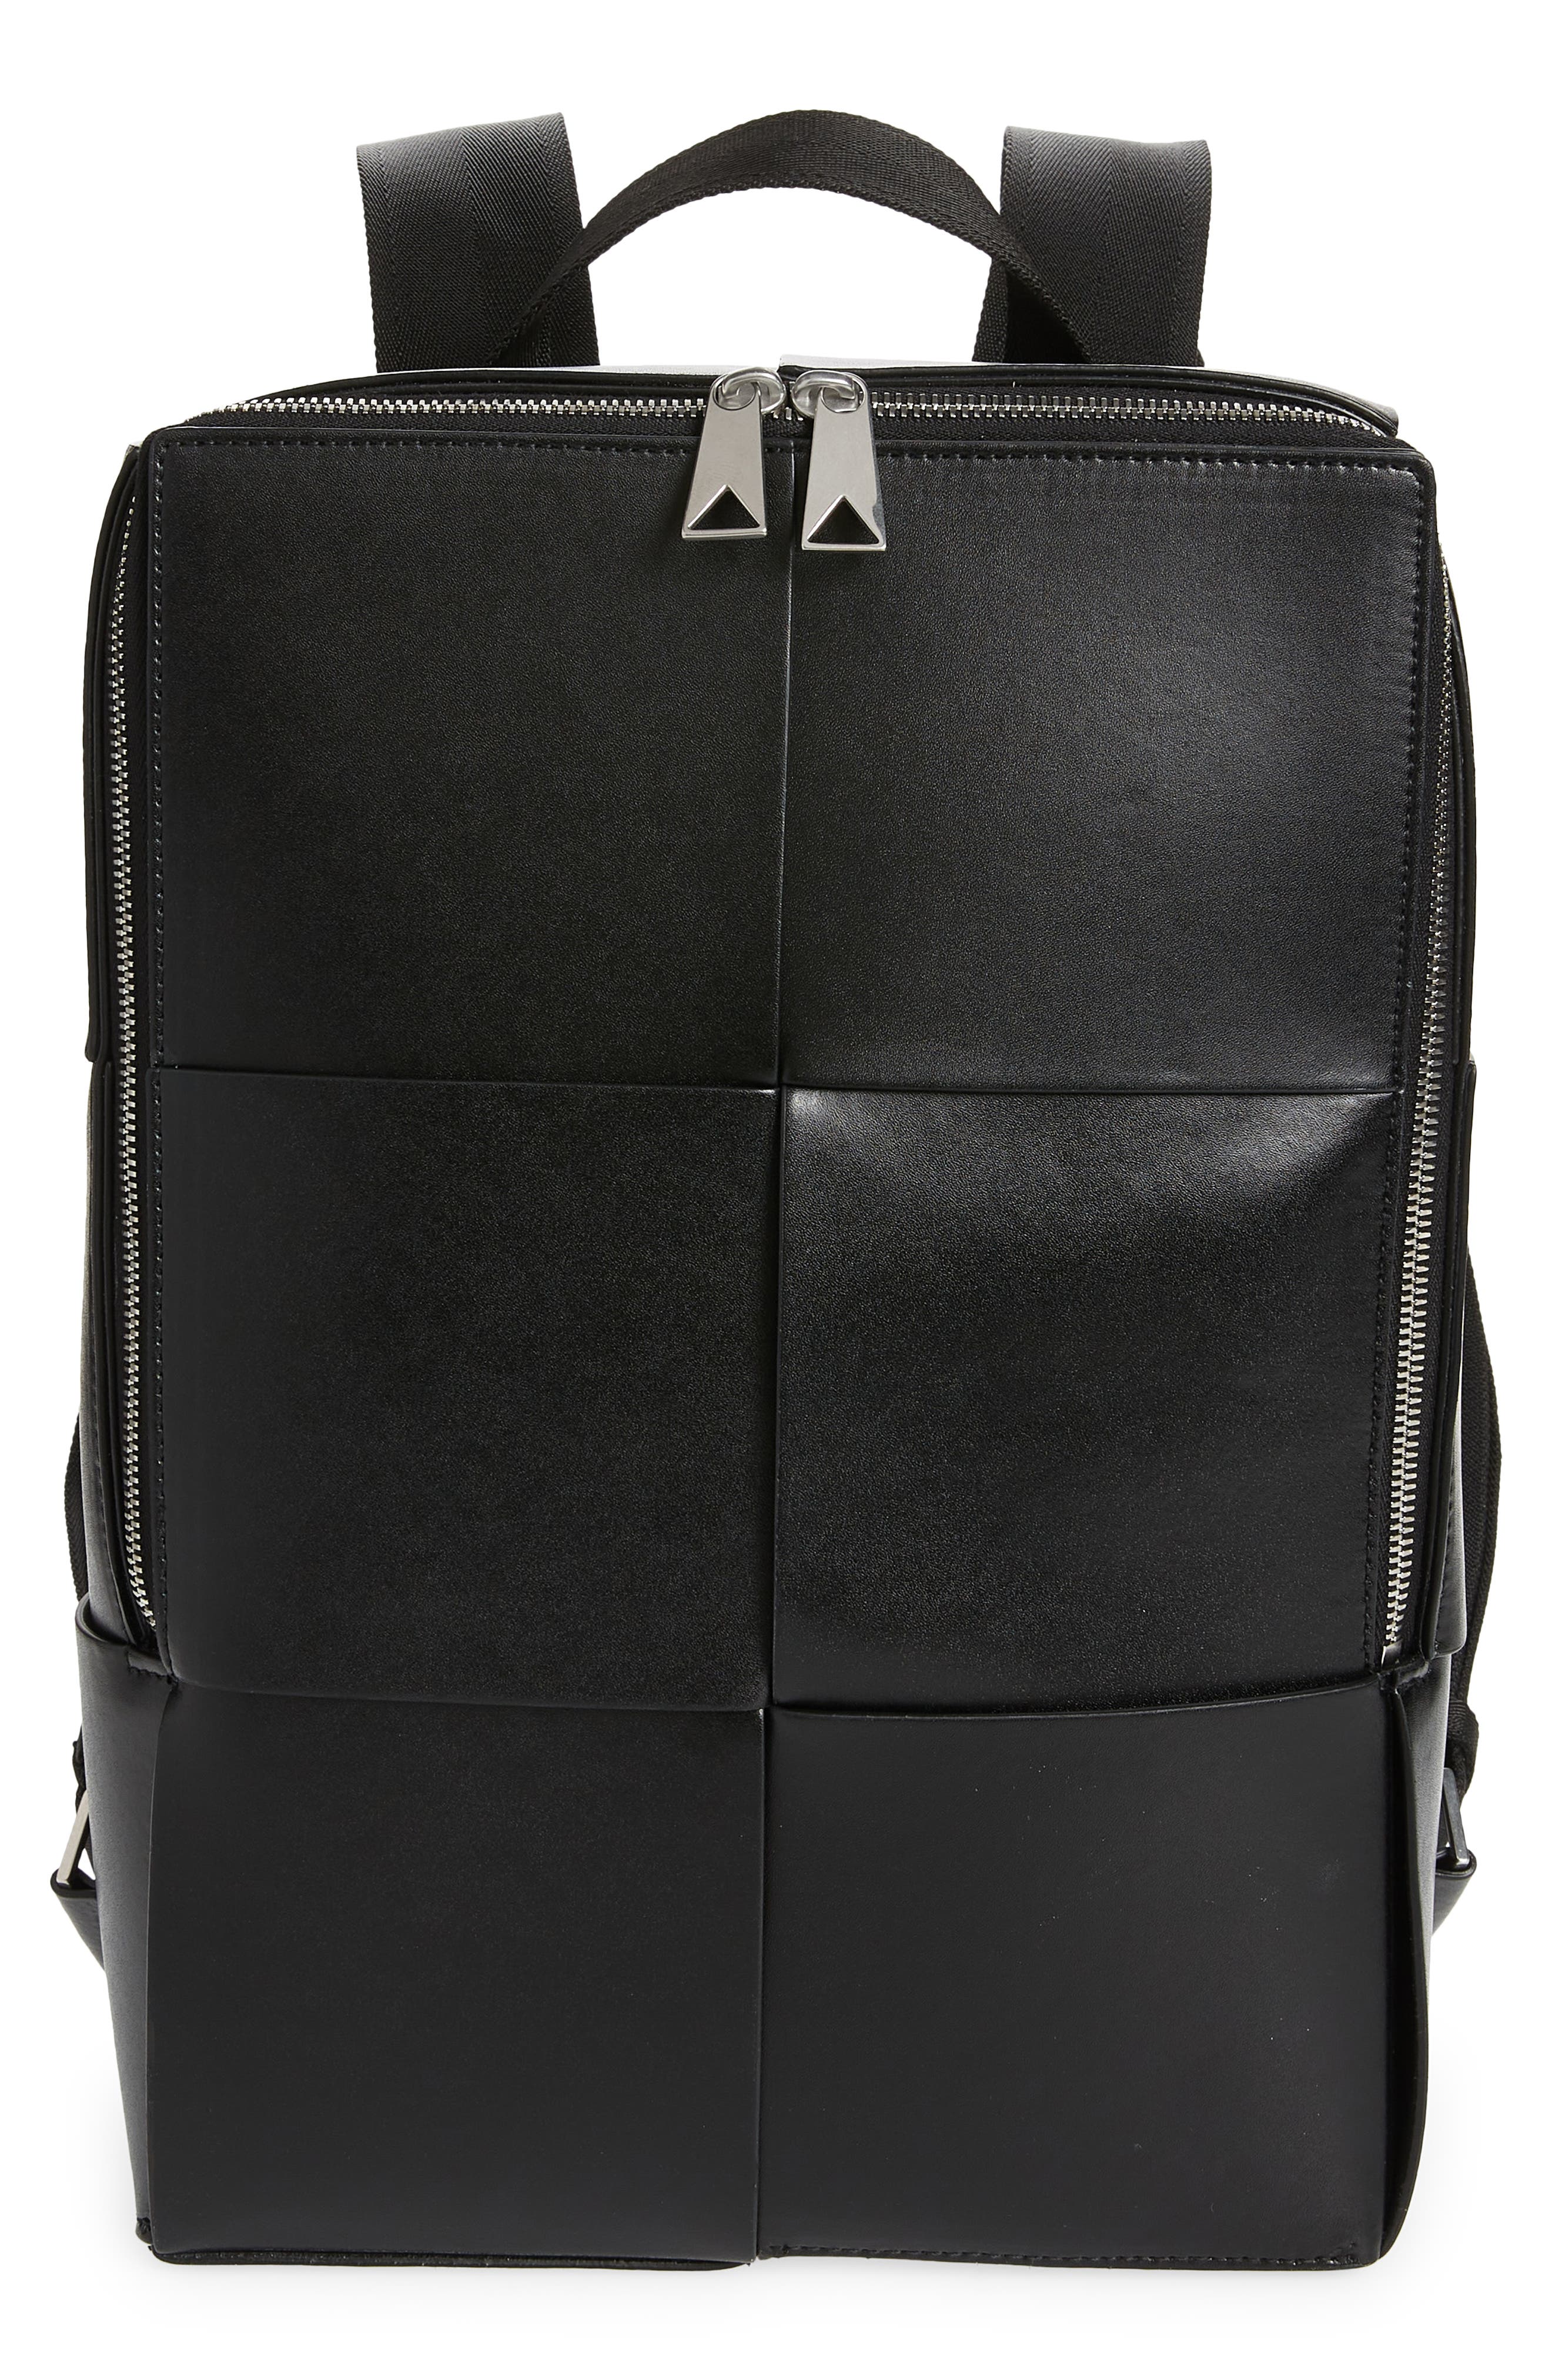 Bottega Veneta Arco Intrecciato Leather Backpack in Black Silver